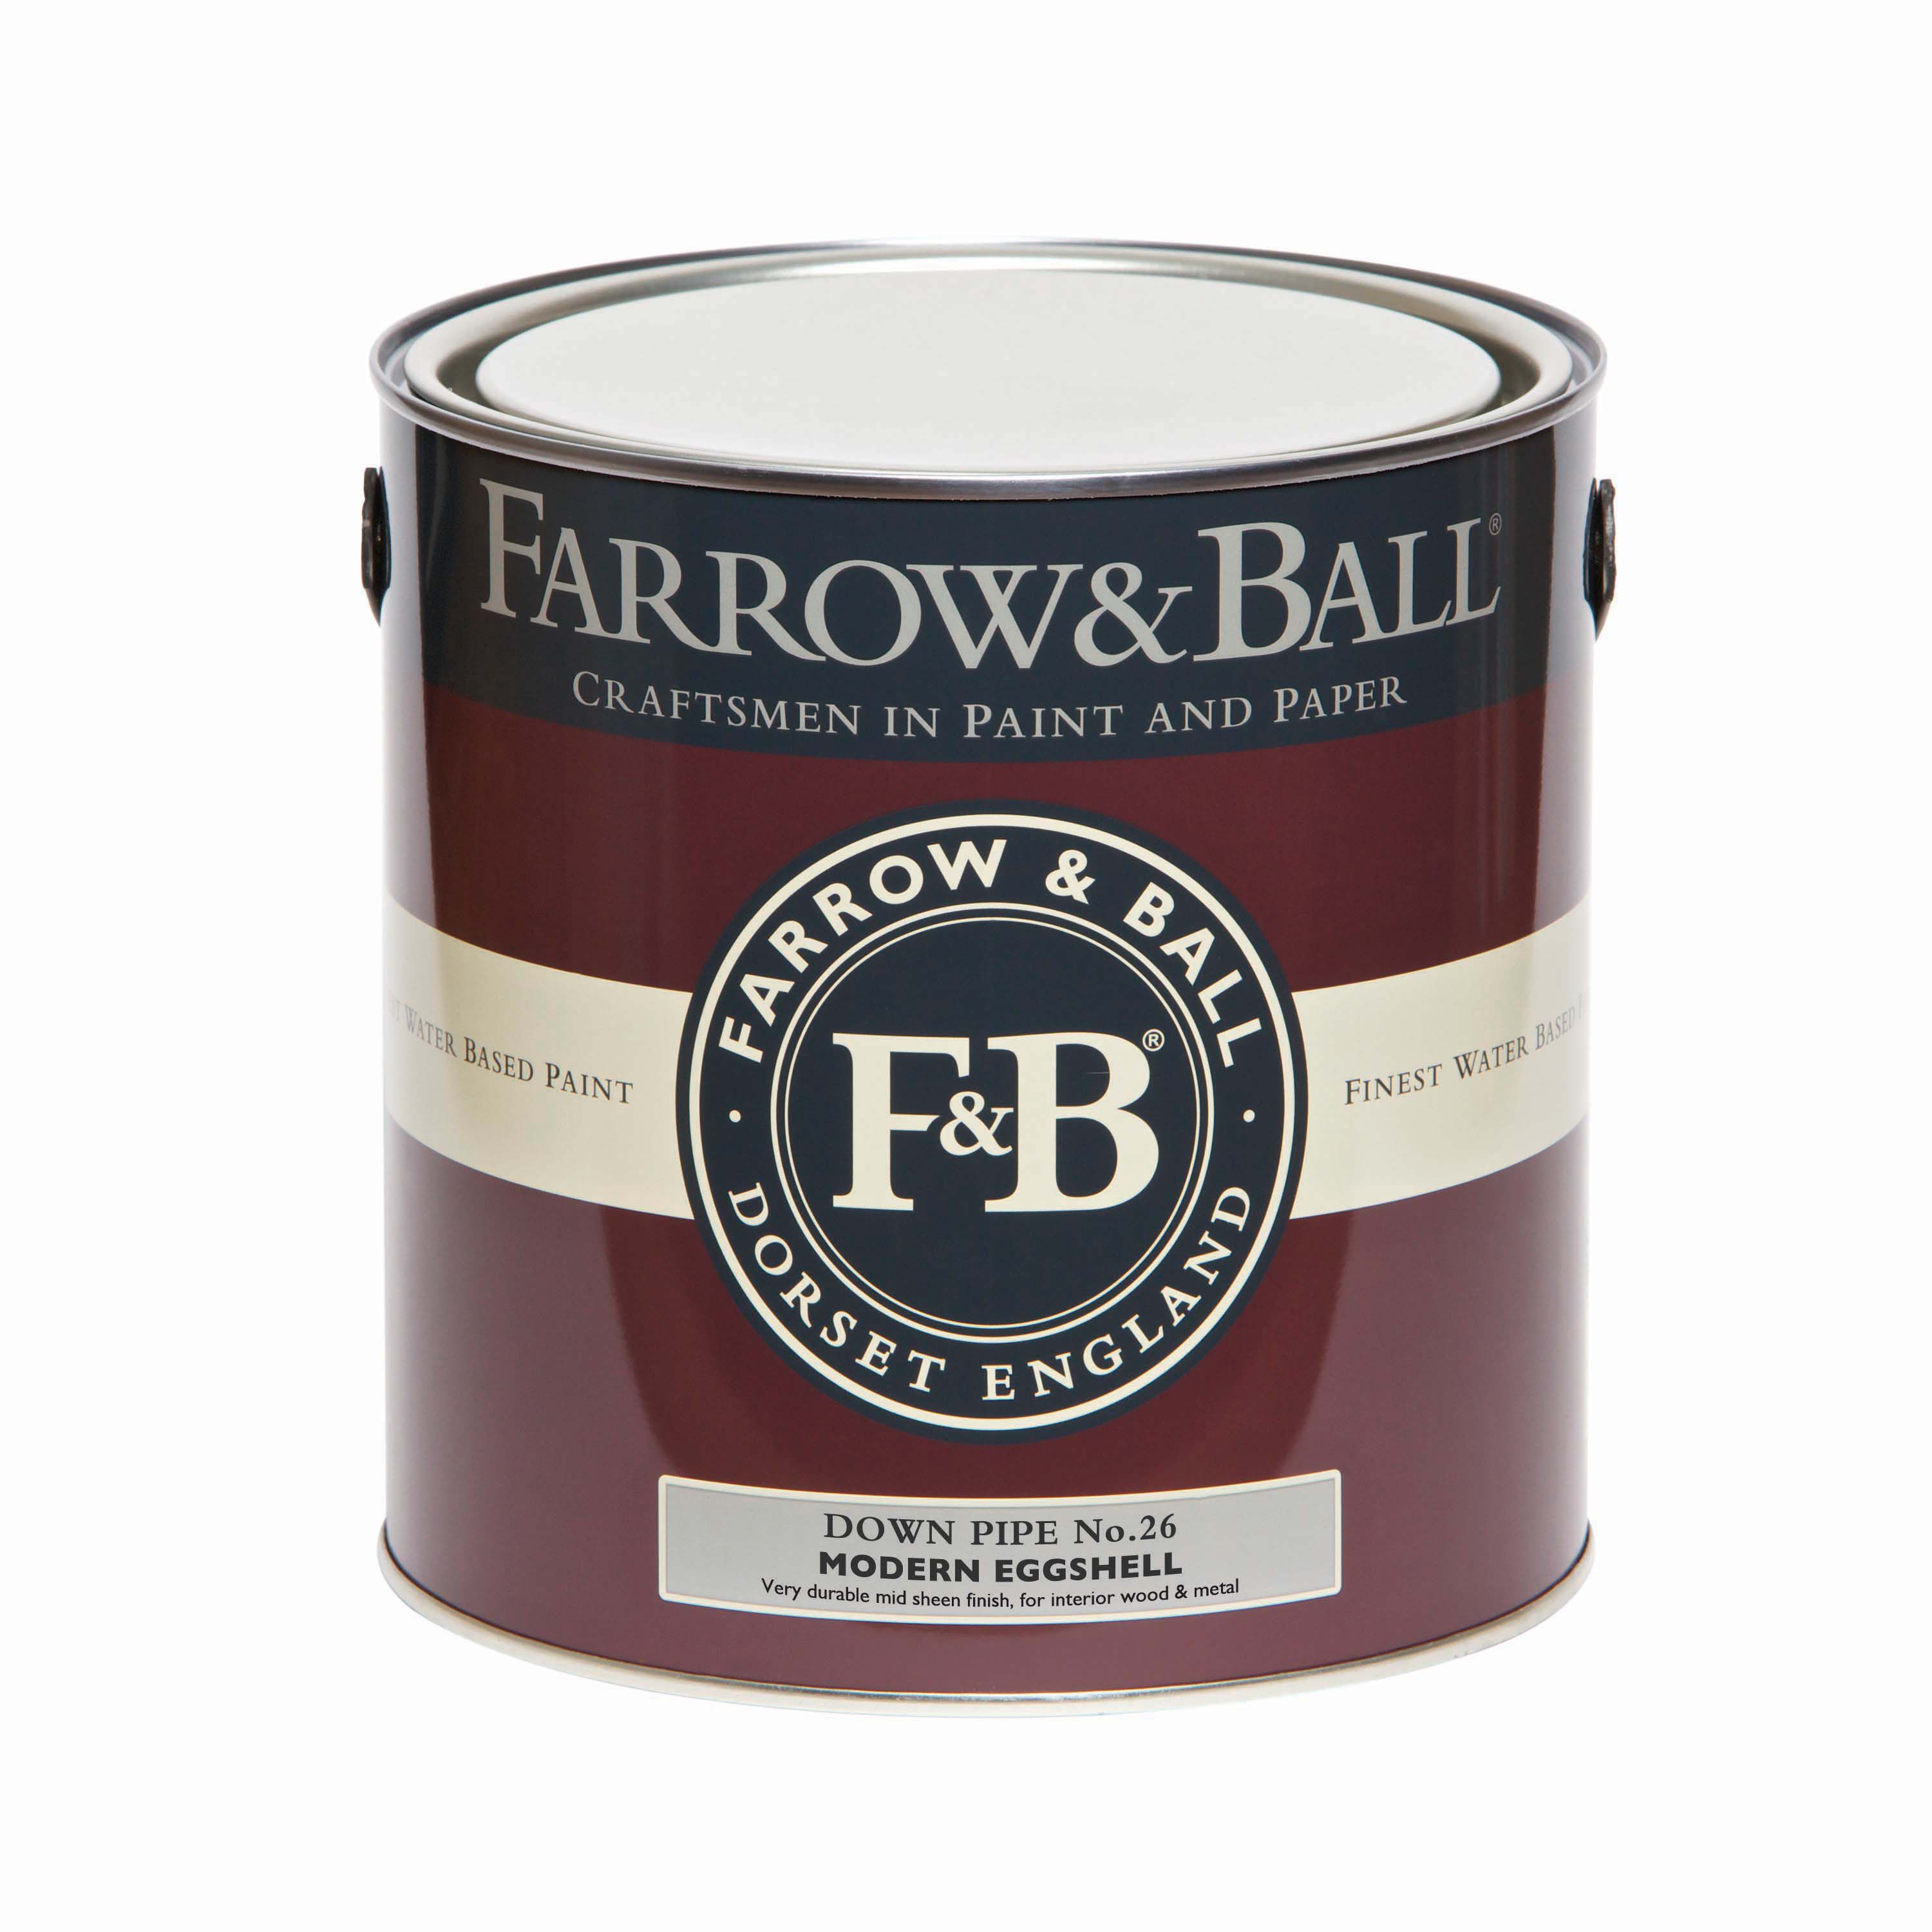 Farrow & Ball Modern Down Pipe No.26 Eggshell Paint, 2.5L